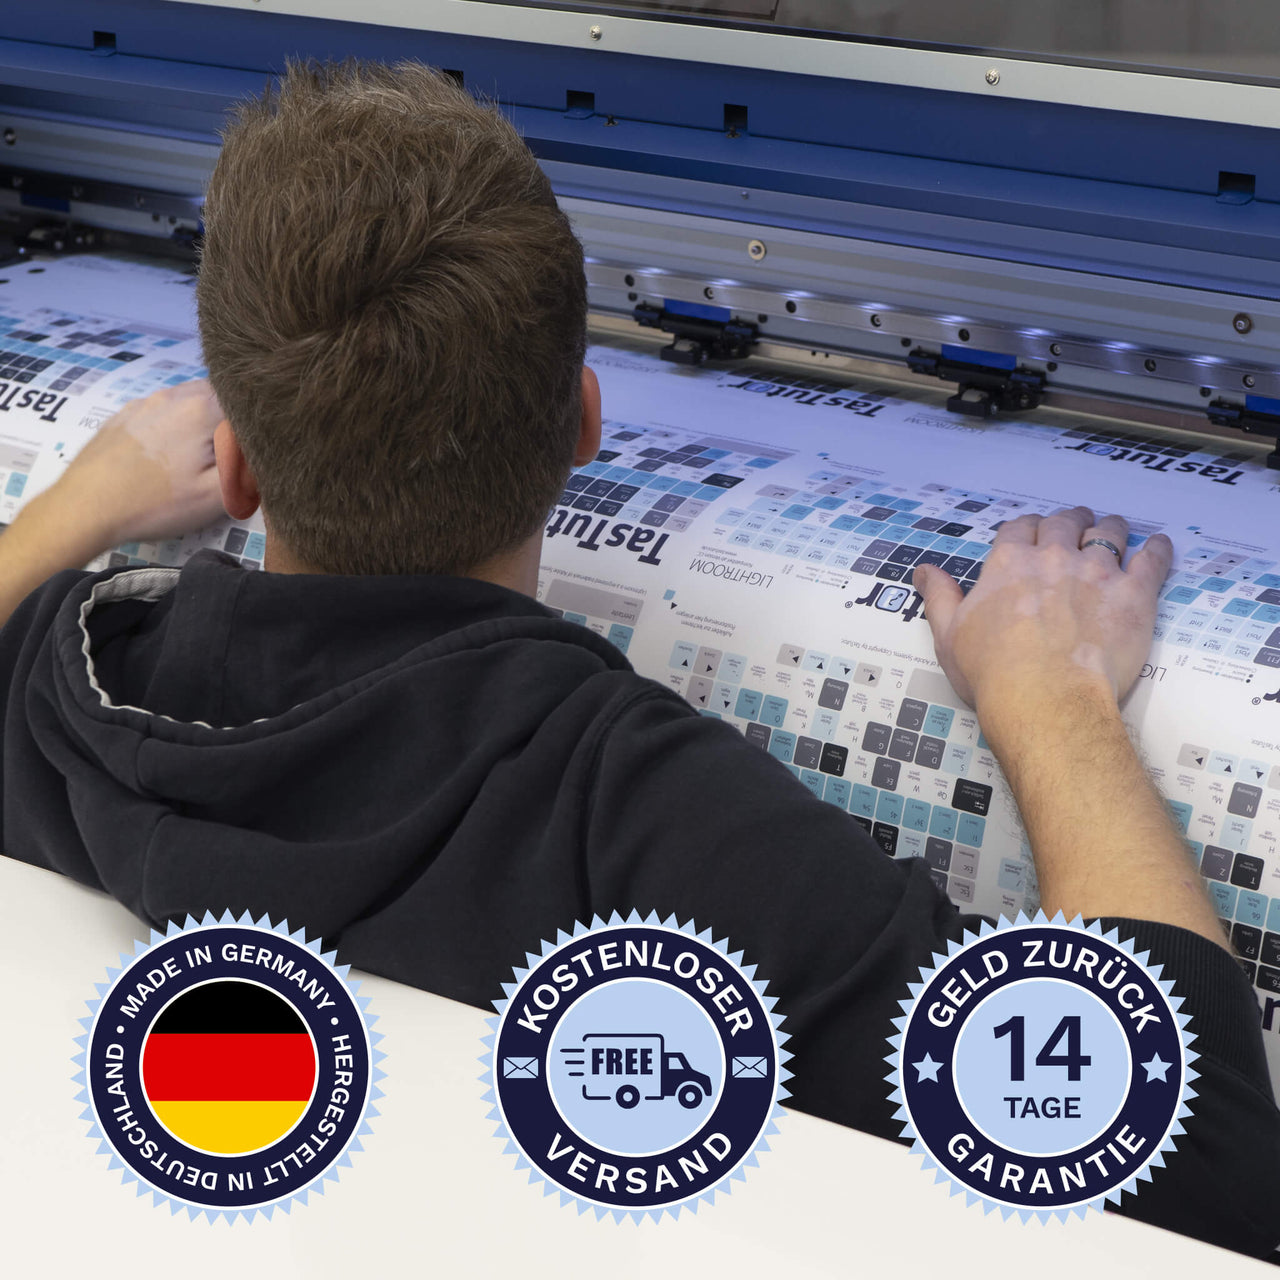 FL Studio Tastaturaufkleber werden in Deutschland hergestellt. Der Versand ist kostenlos und wir gewährleisten 14 Tage Geld zurück Garantie | TasTutor